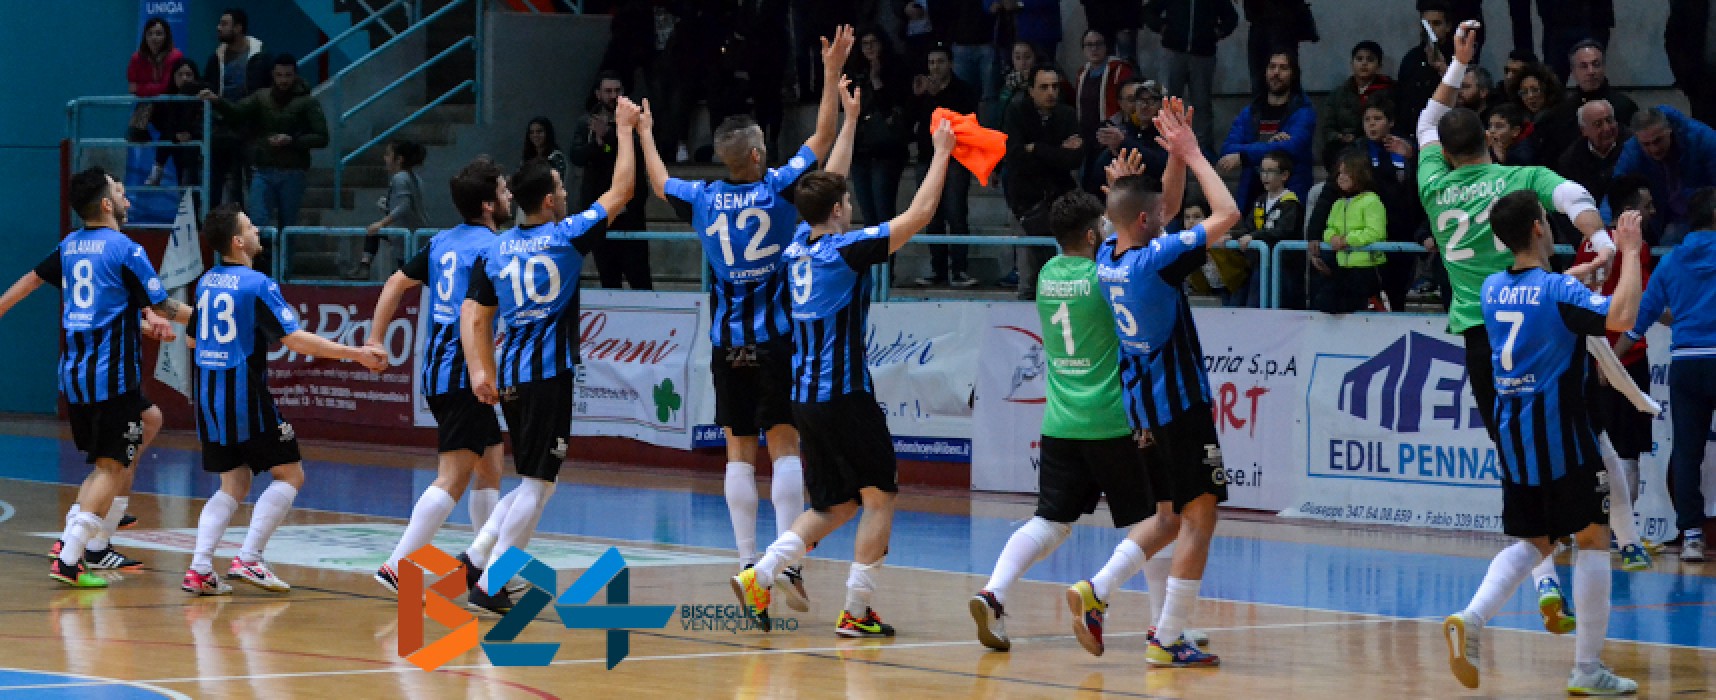 Futsal Bisceglie, parte l’avventura della Final Eight di Coppa Italia / VIDEO